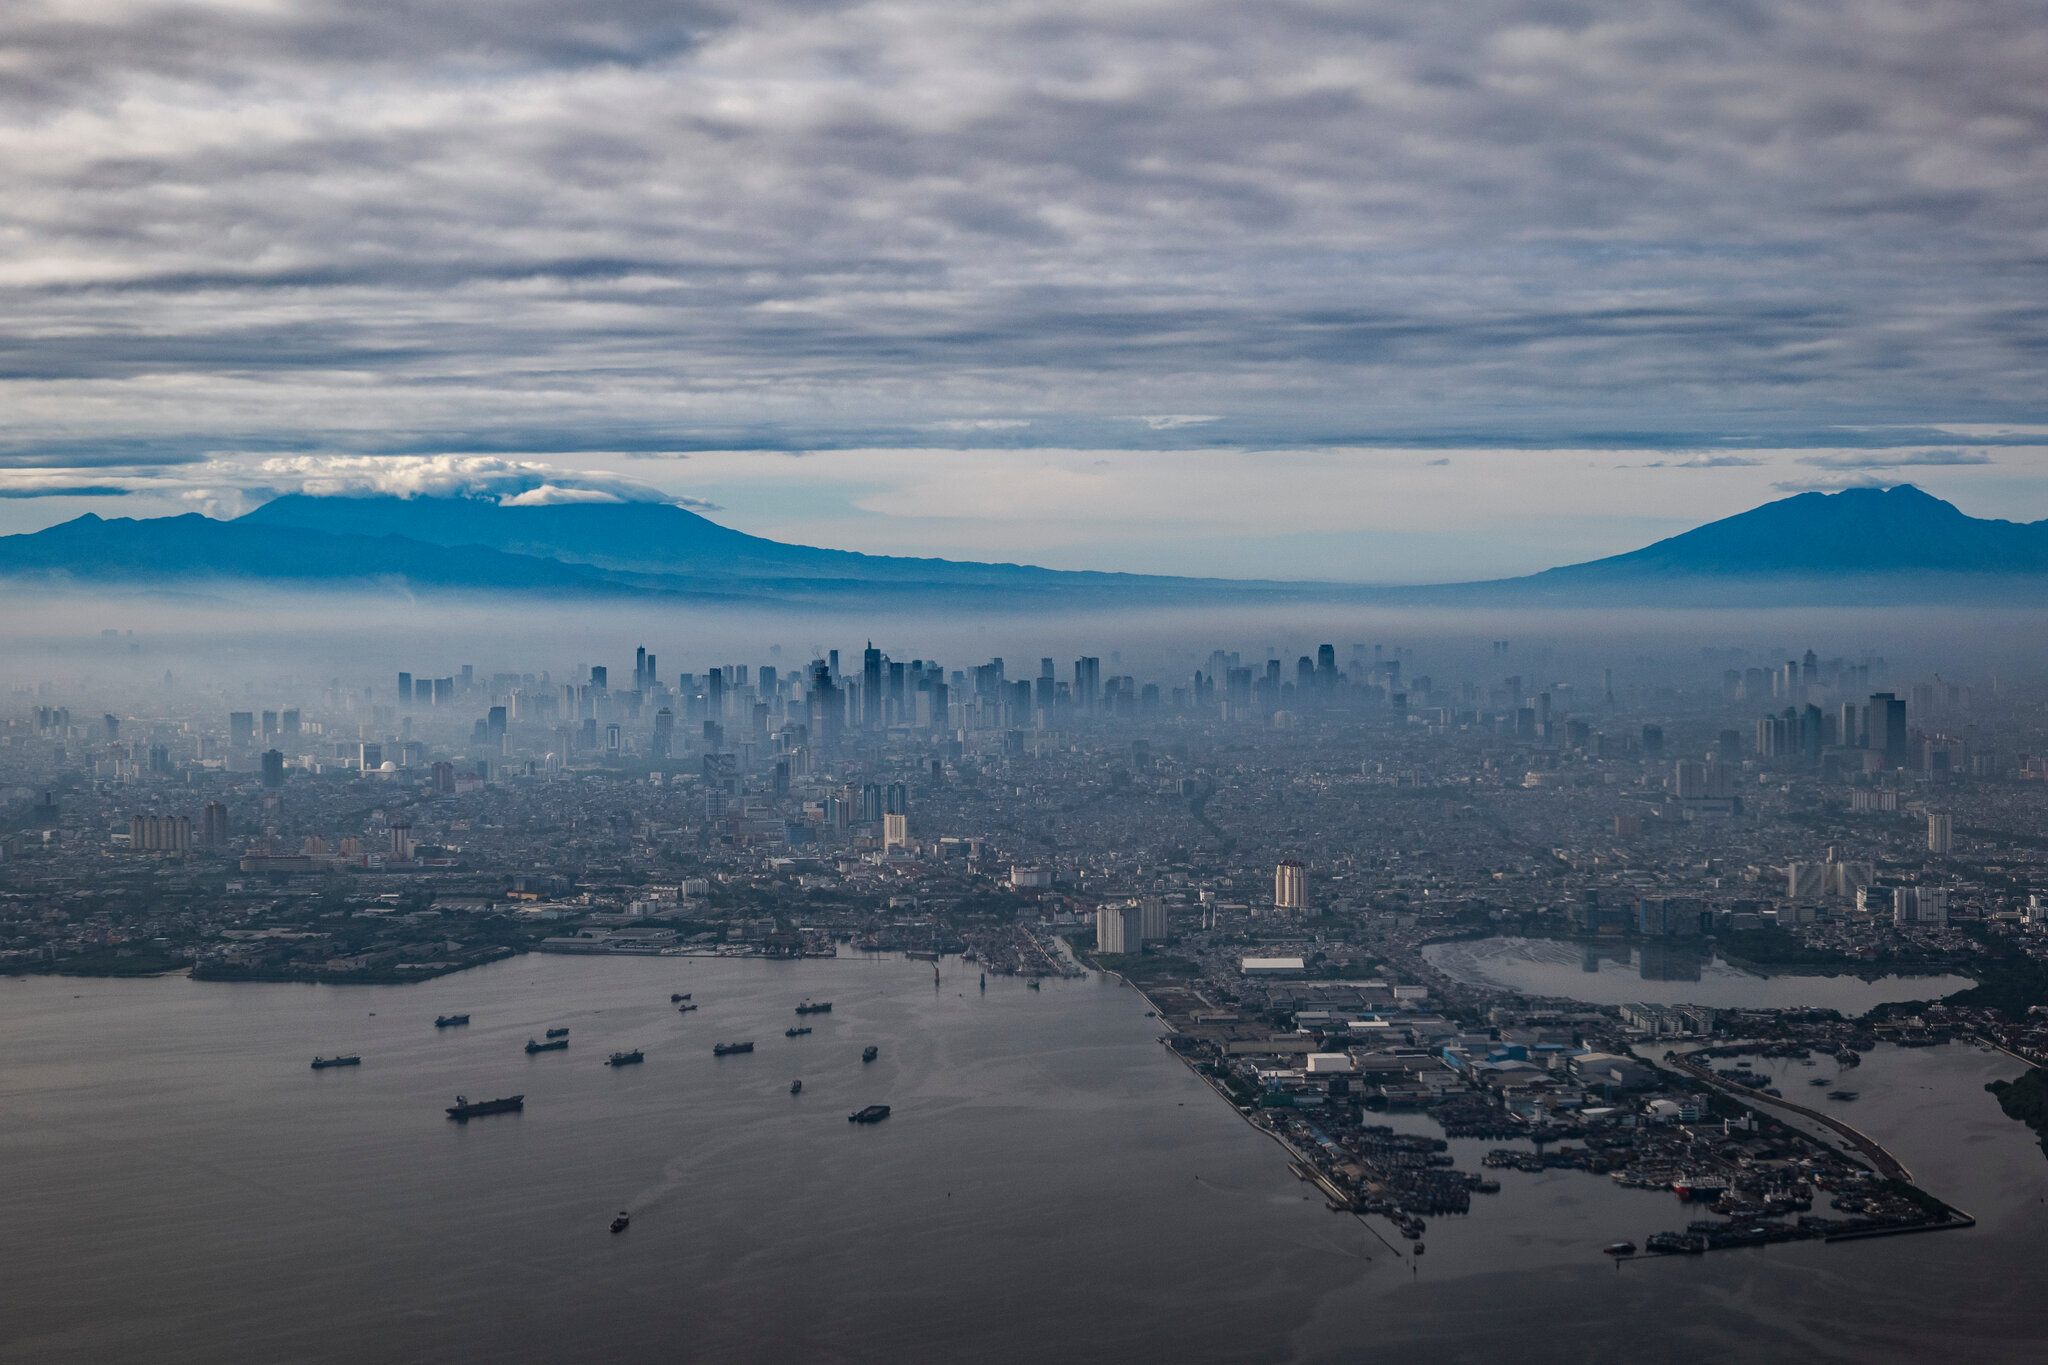 Khoảng 40% diện tích thủ đô Jakarta hiện nằm dưới mực nước biển. Ảnh: NYT 